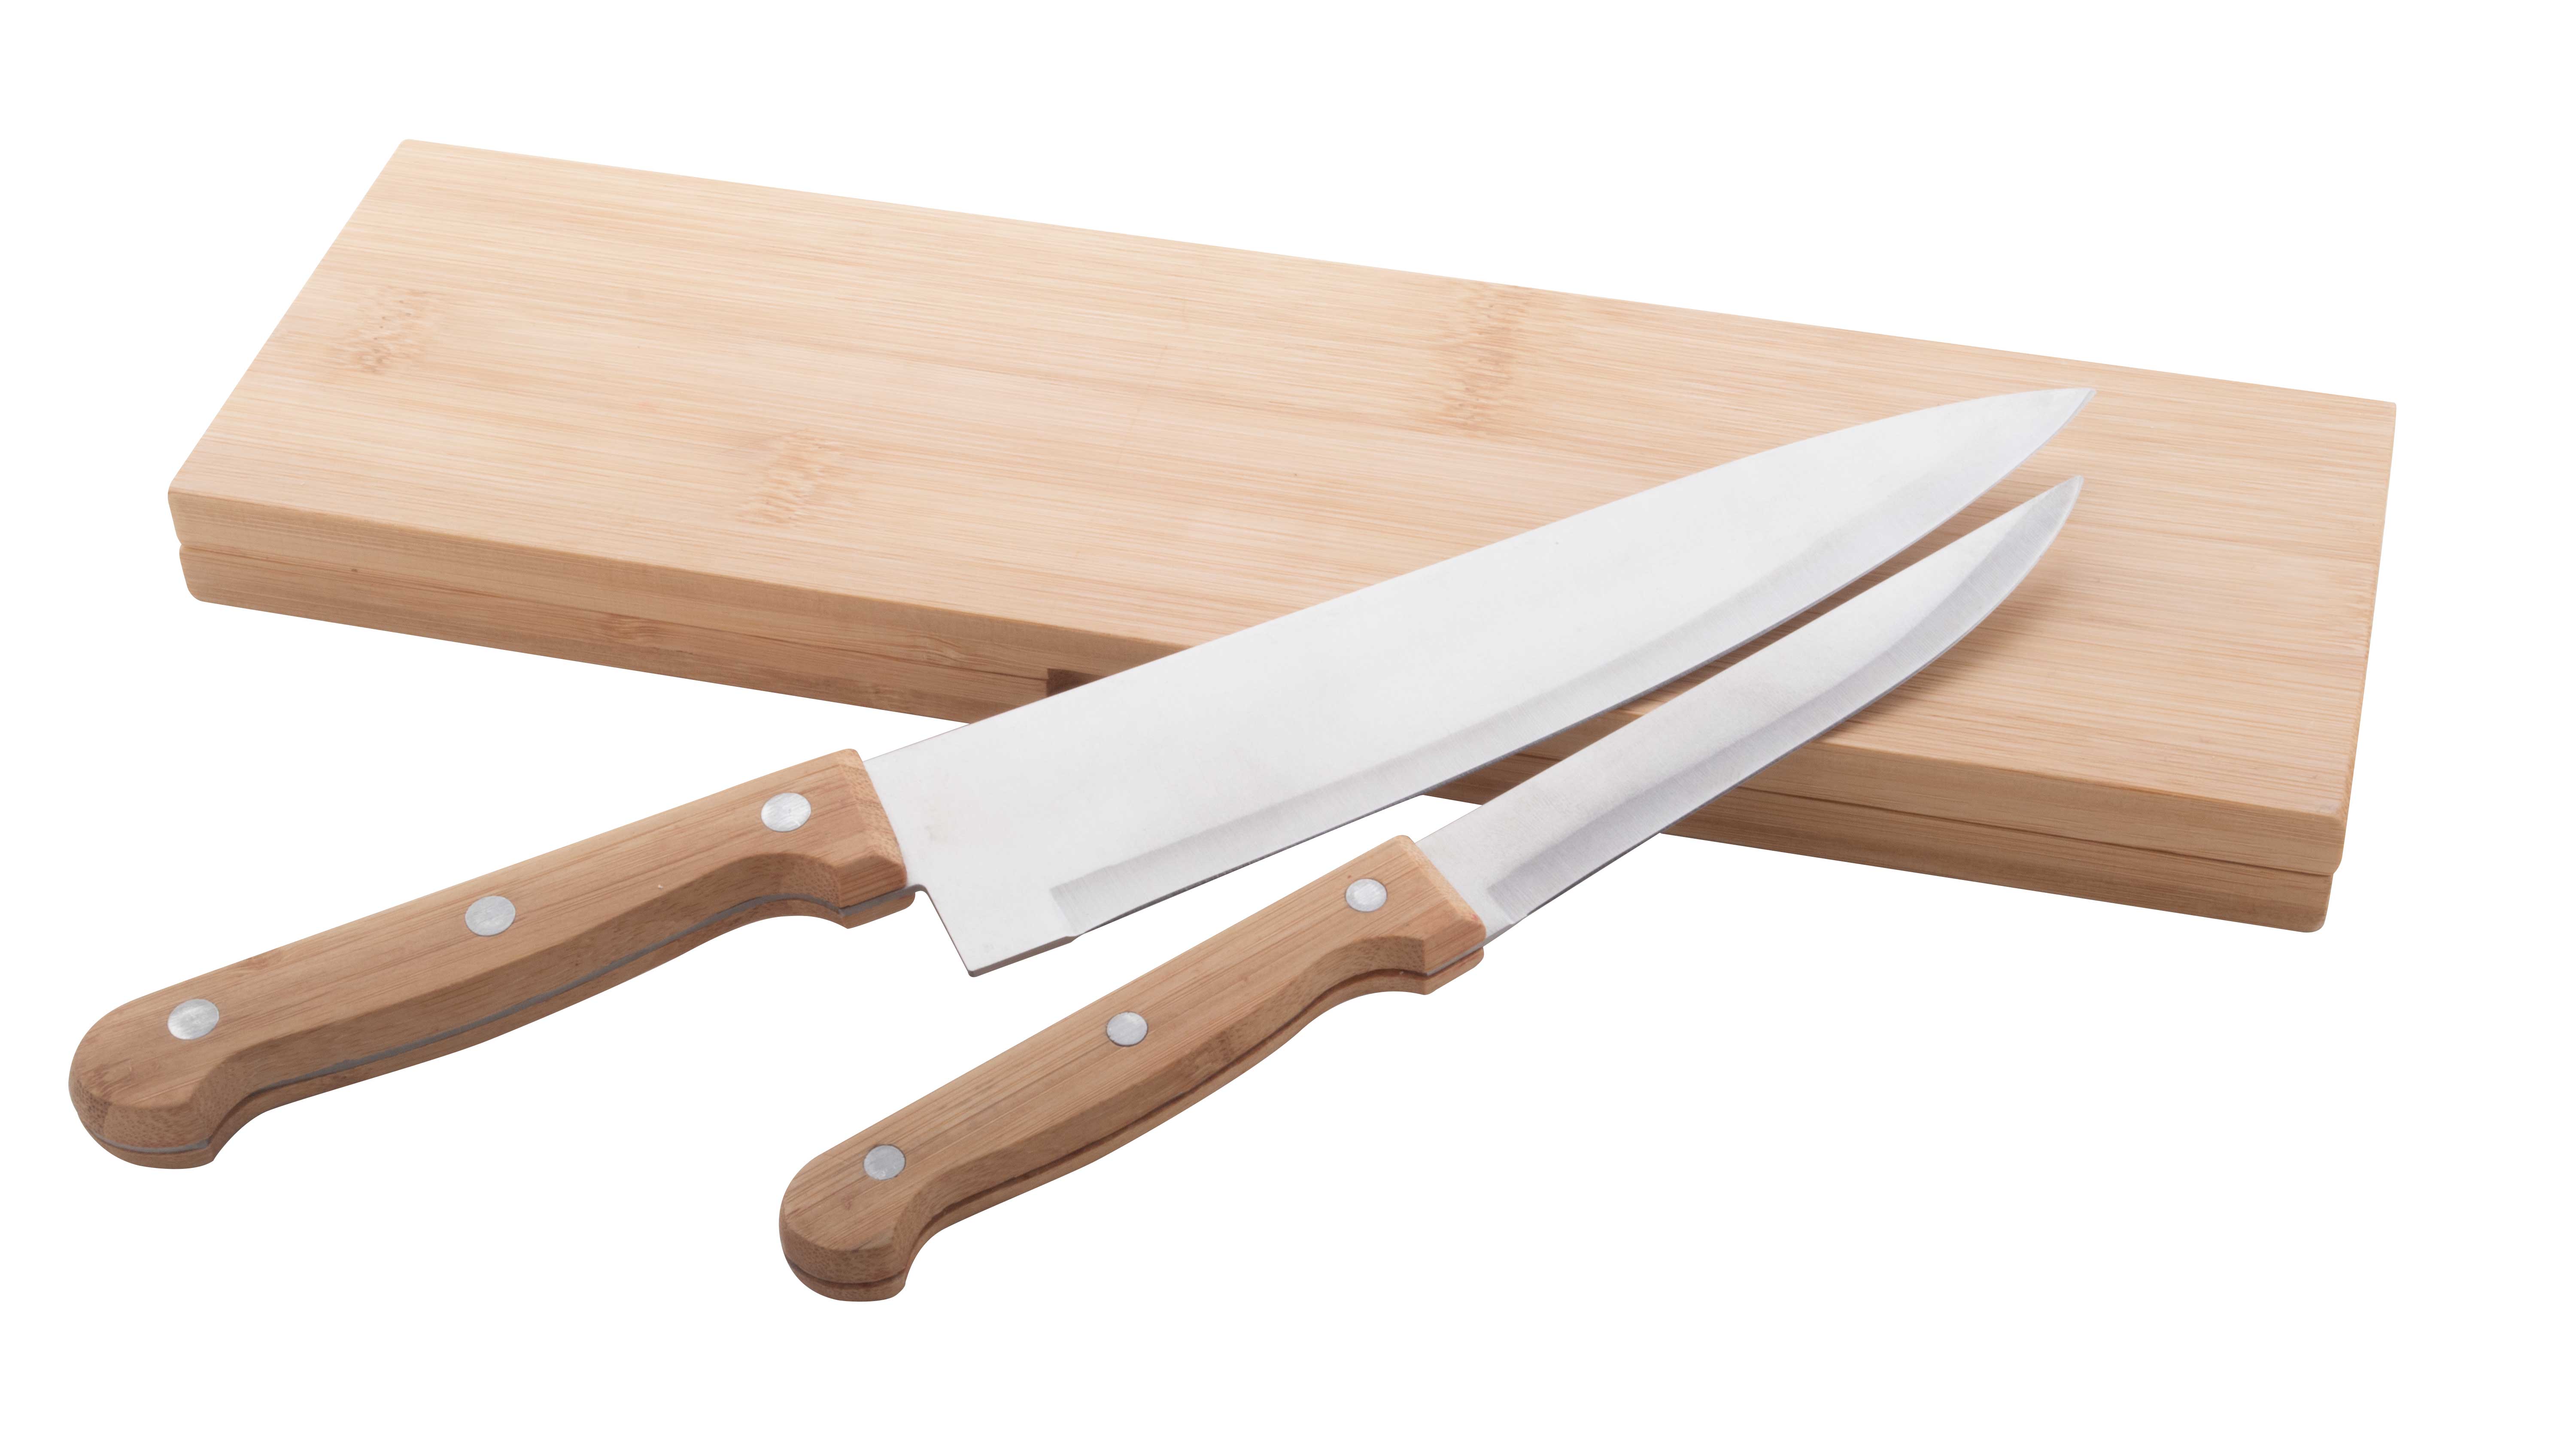 Sada kuchyňských nožů SANJO v bambusovém pouzdru, 2 ks - přírodní